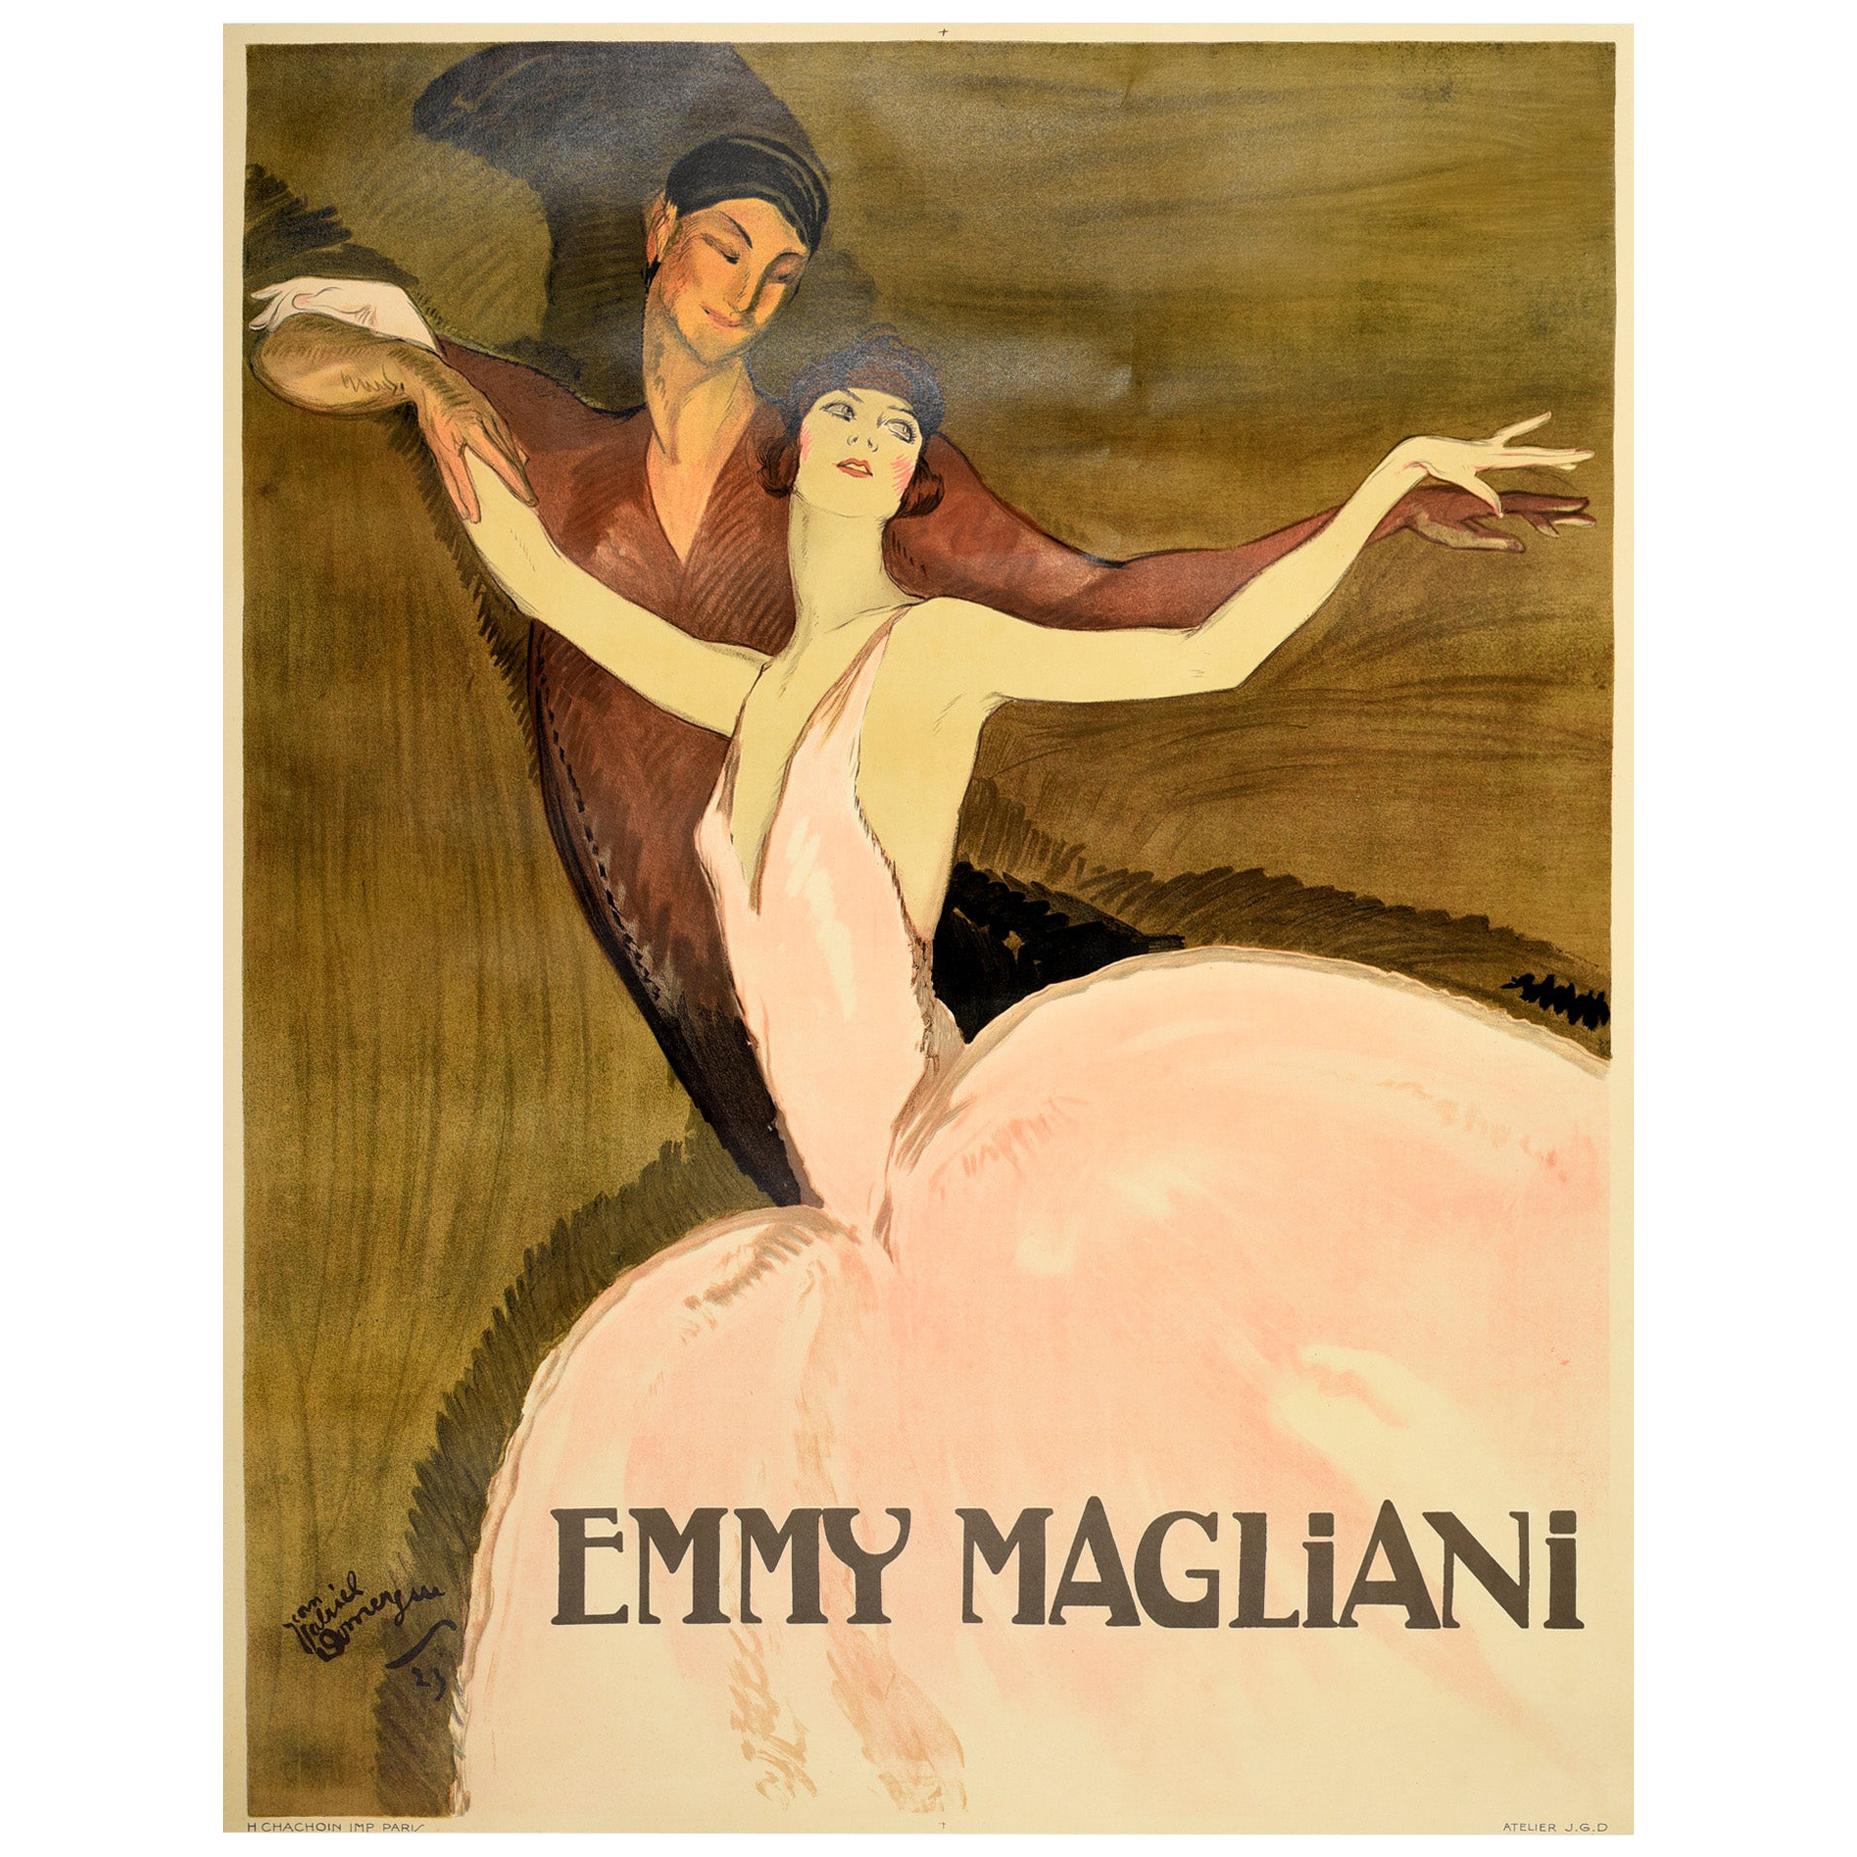 Large Original Vintage Poster Emmy Magliani Ballet Dance Design Ballerina Art